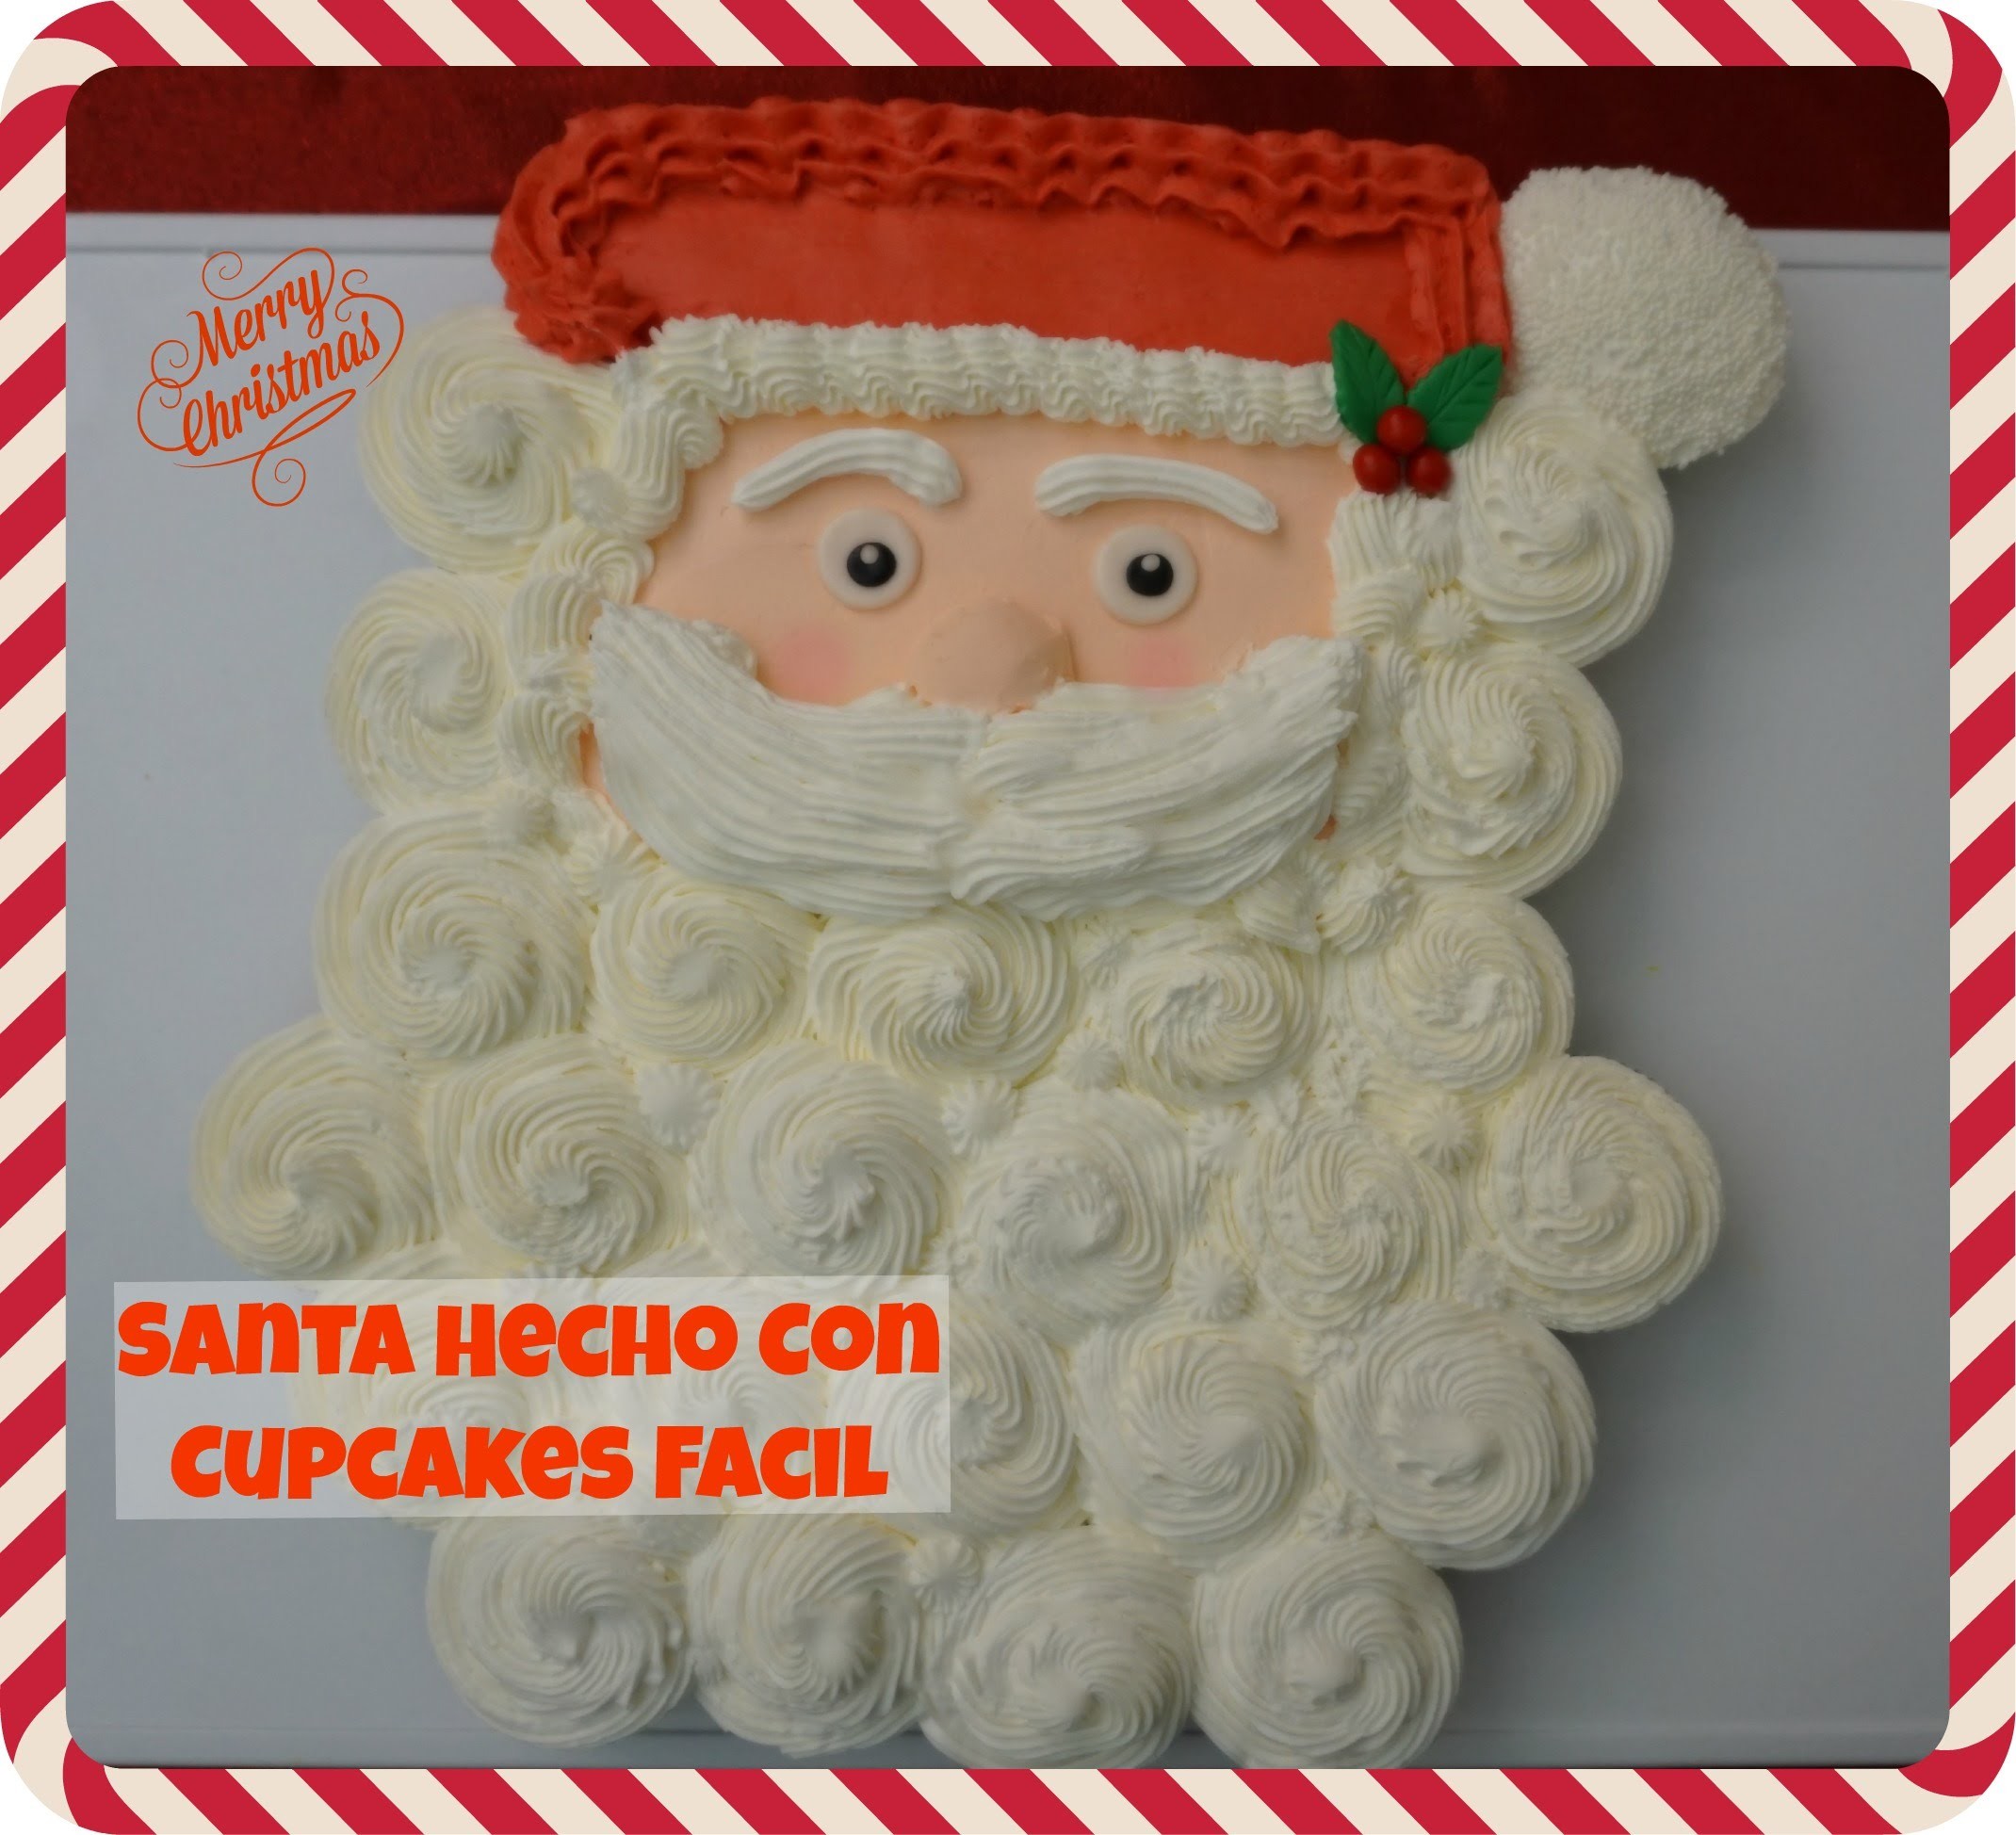 Santa Hecho Con Cupcakes Facil